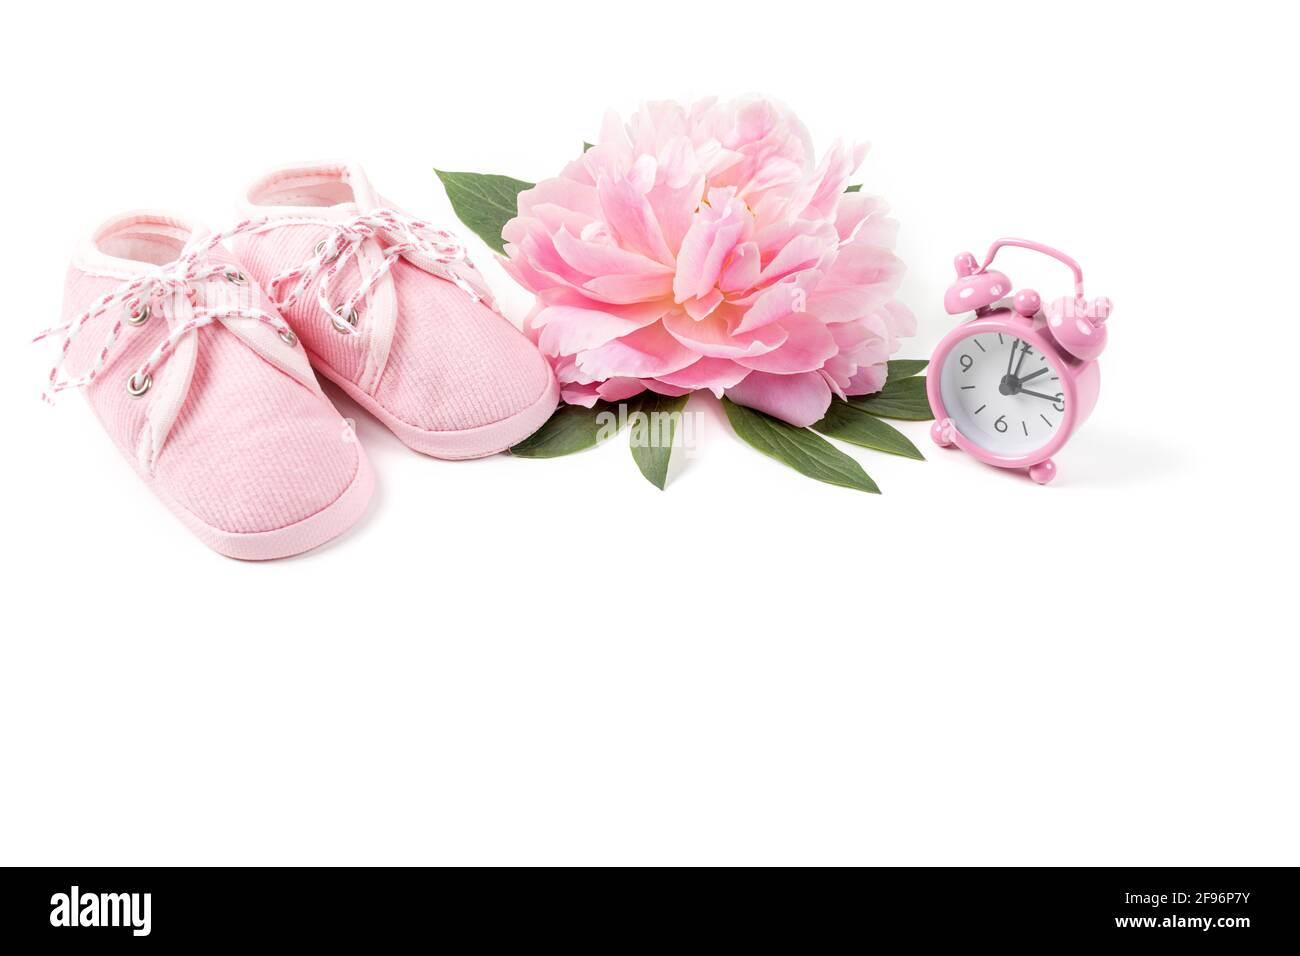 Rosa Babyschuhe mit Pfingstrose und Wecker auf weißem Hintergrund.  Grußkarte oder Einladung für Neugeborene. Speicherplatz kopieren  Stockfotografie - Alamy